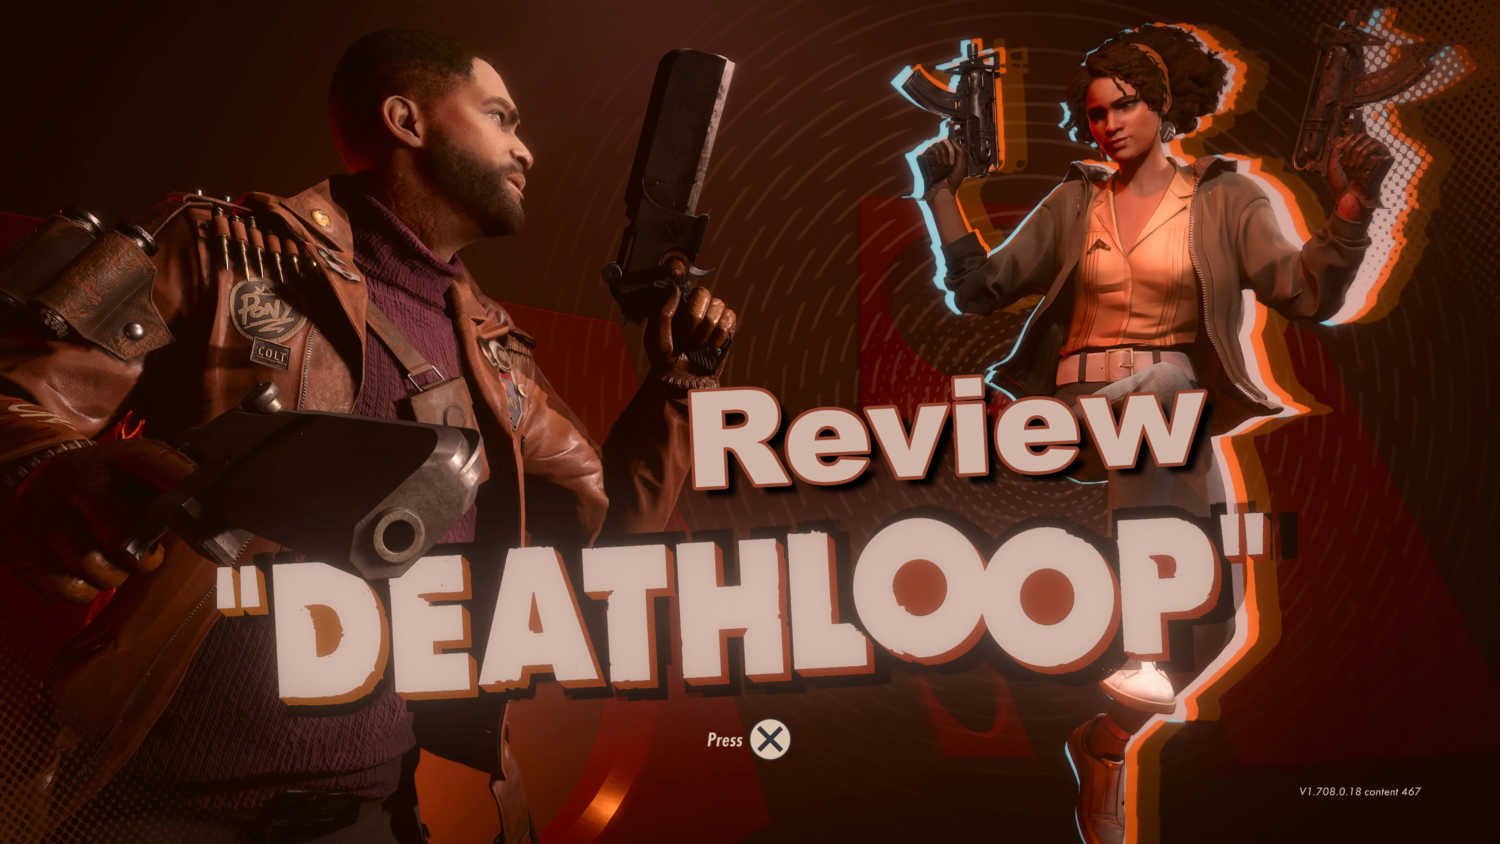 Deathloop Review Image